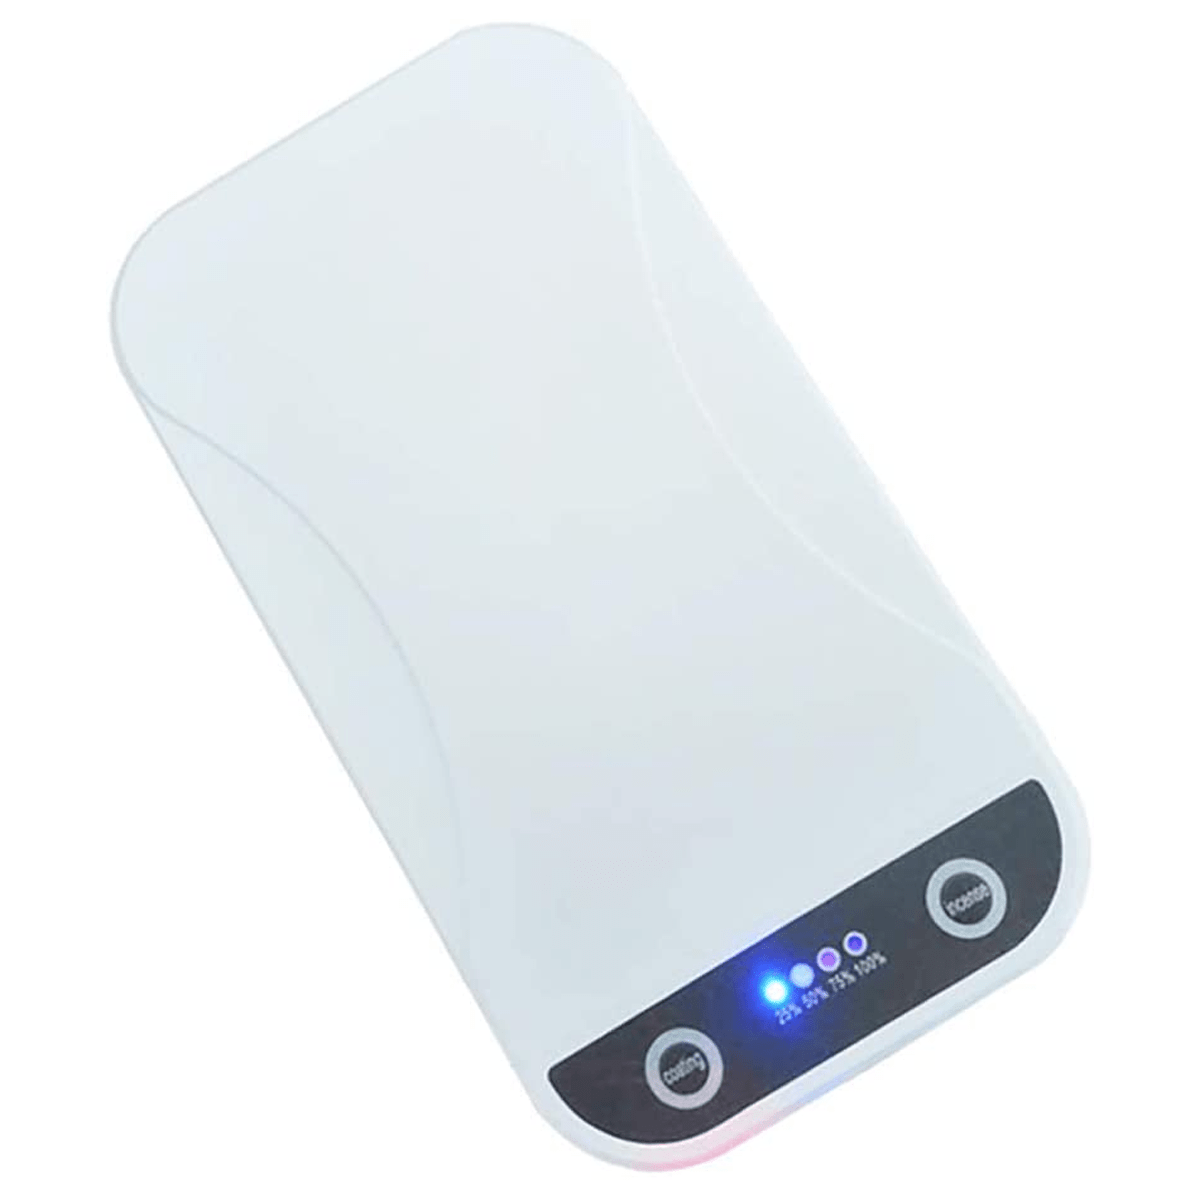 Double UV Lamp Portable Sterilization Disinfection Box